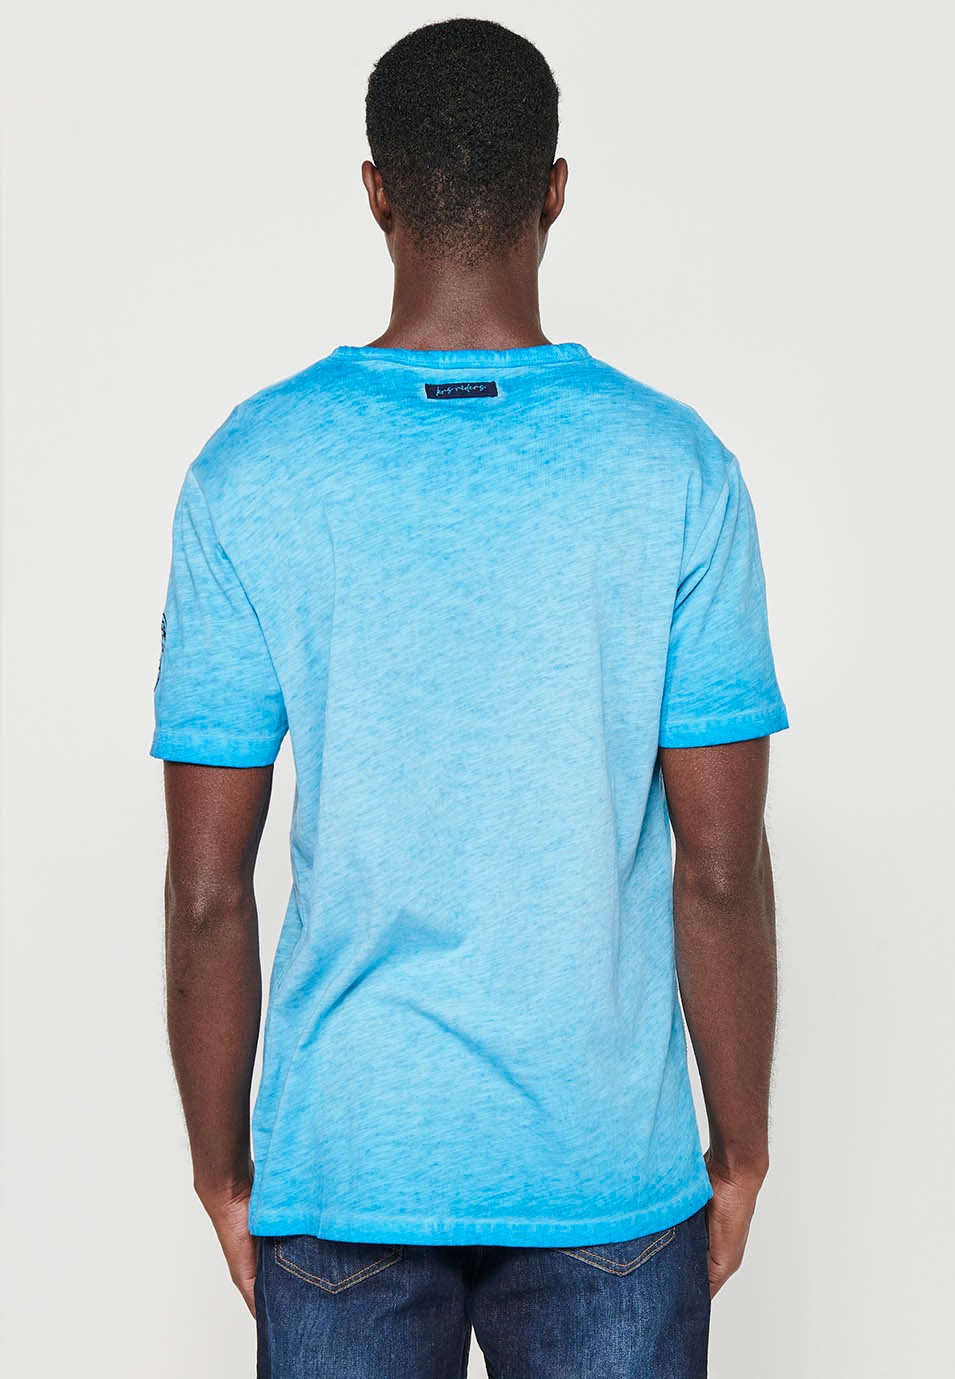 Camiseta de algodón manga corta, cuello pico con adorno de botones, color azul para hombre 2